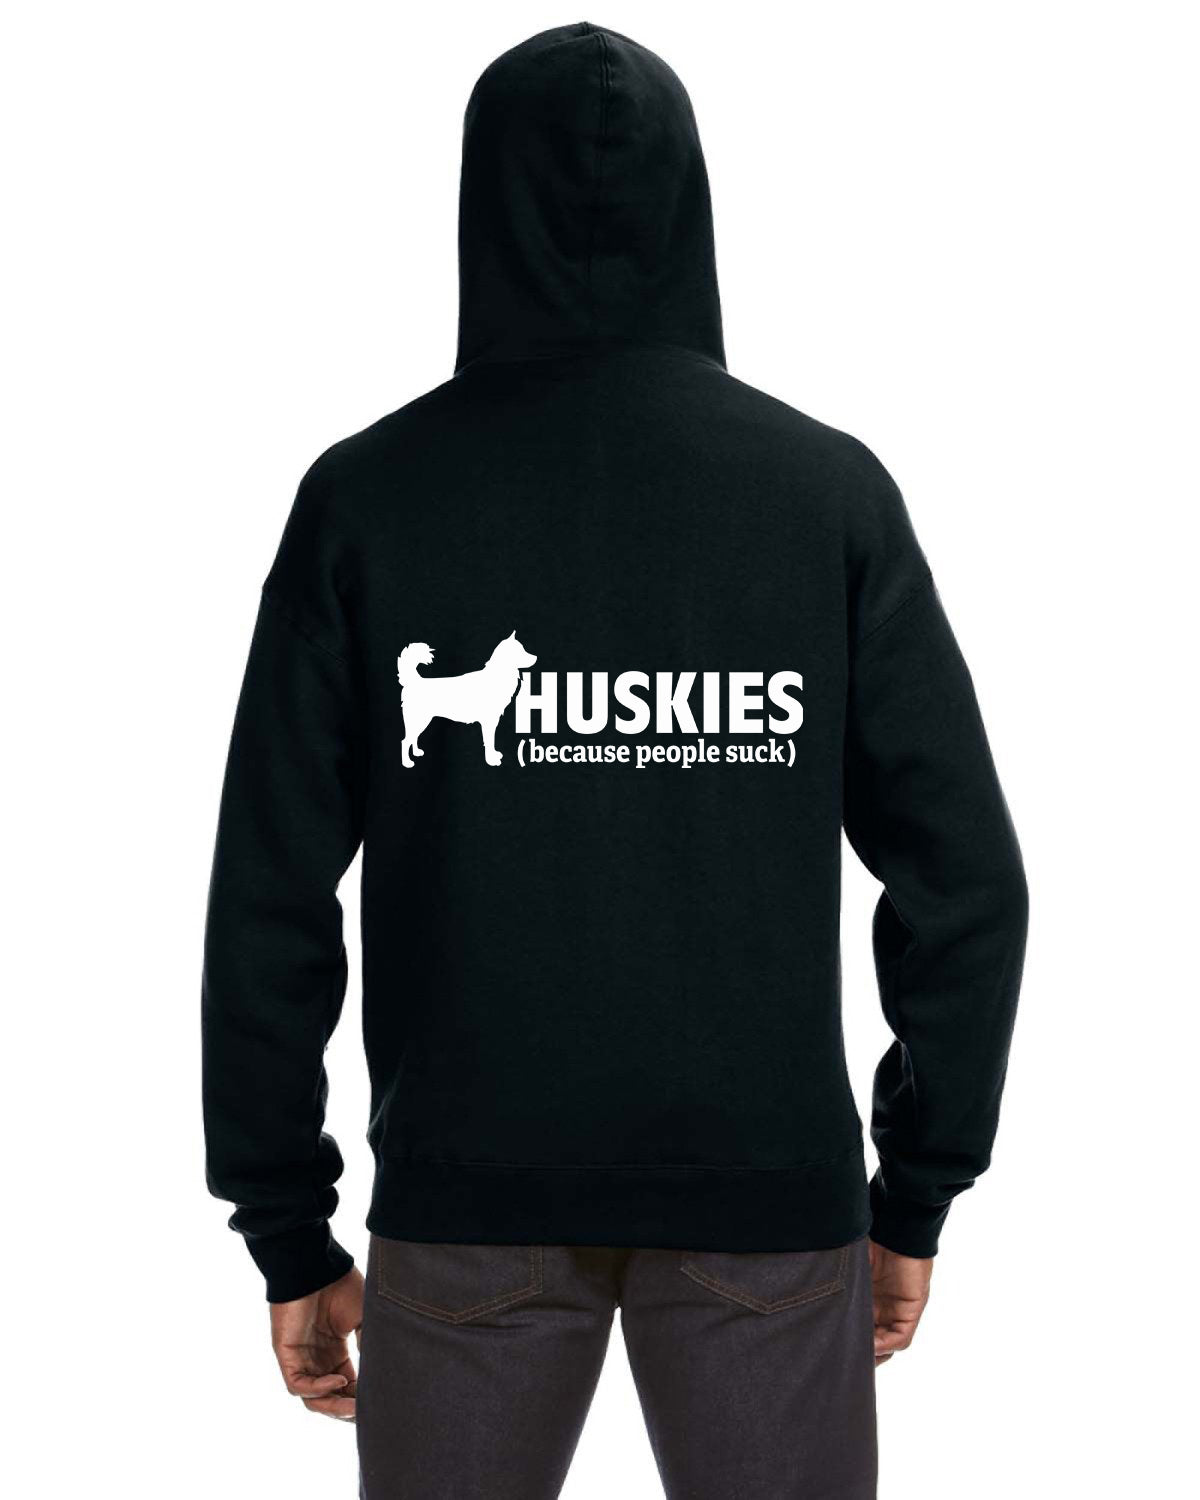 Huskies (because people suck) - Siberian Husky - Sled Dog Zip Hoodie